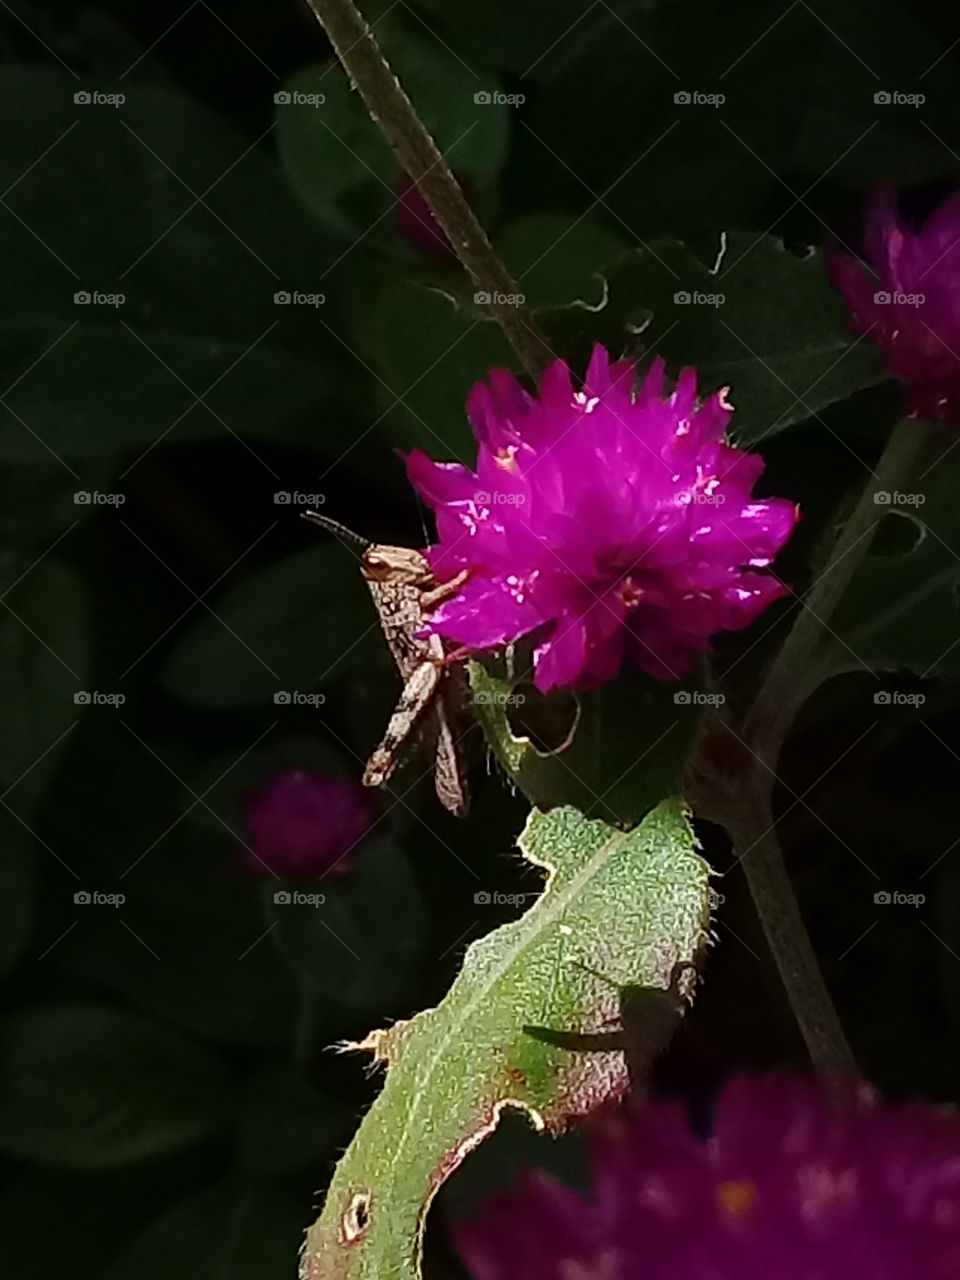 grasshopper above flowers